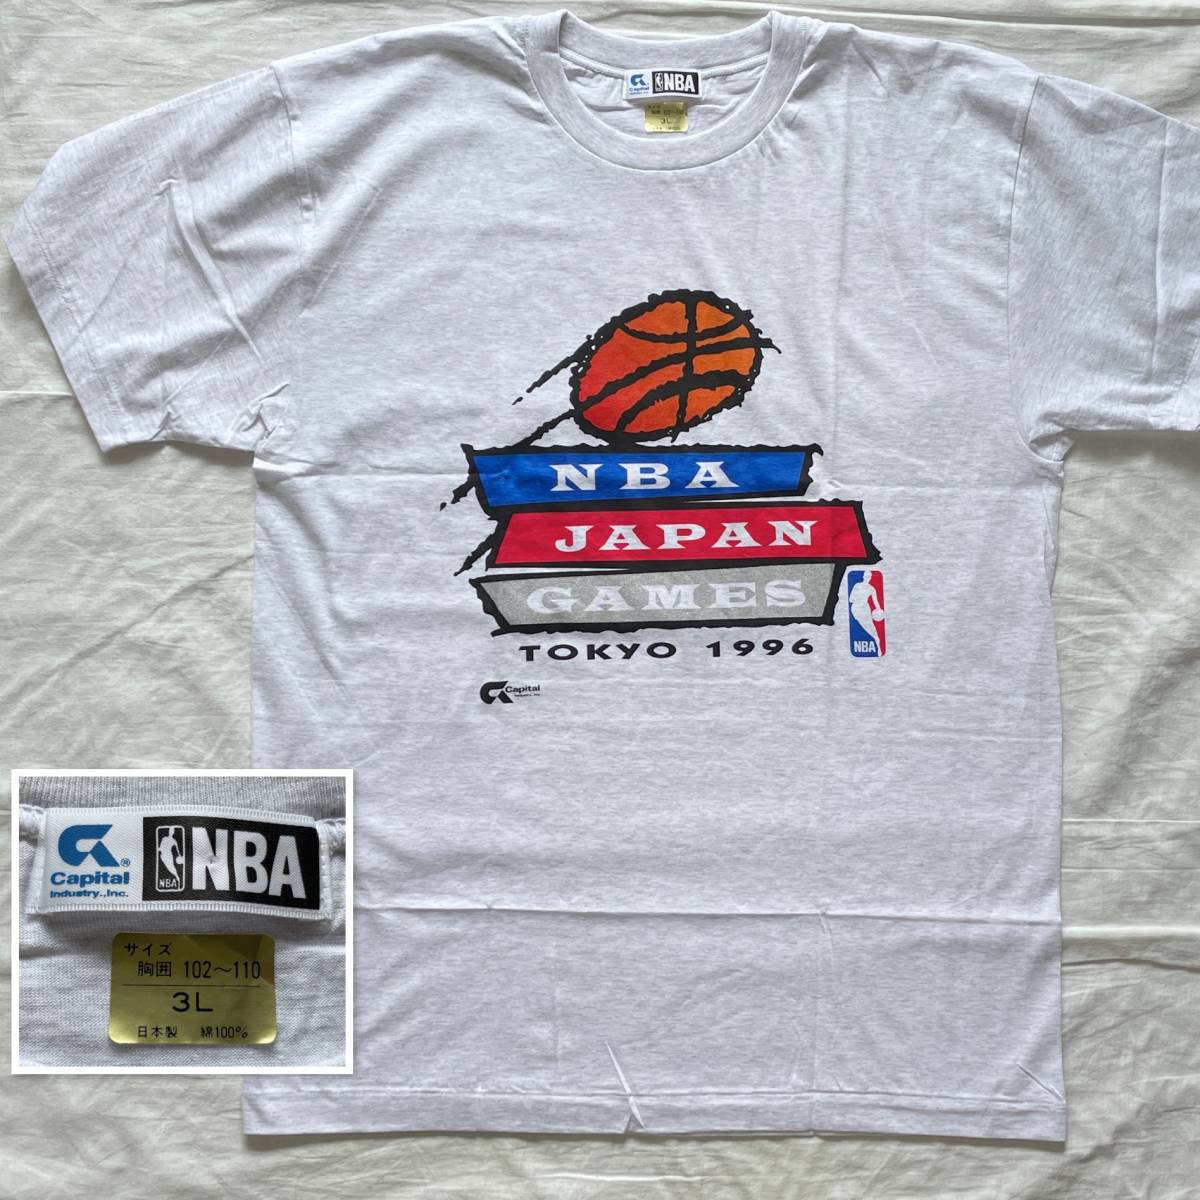 激レア 未使用品 1996年製 NBA JAPAN GAMES TOKYO 1996 公式 Tシャツ 3L キャピタル製 Capital Industri バスケットボール